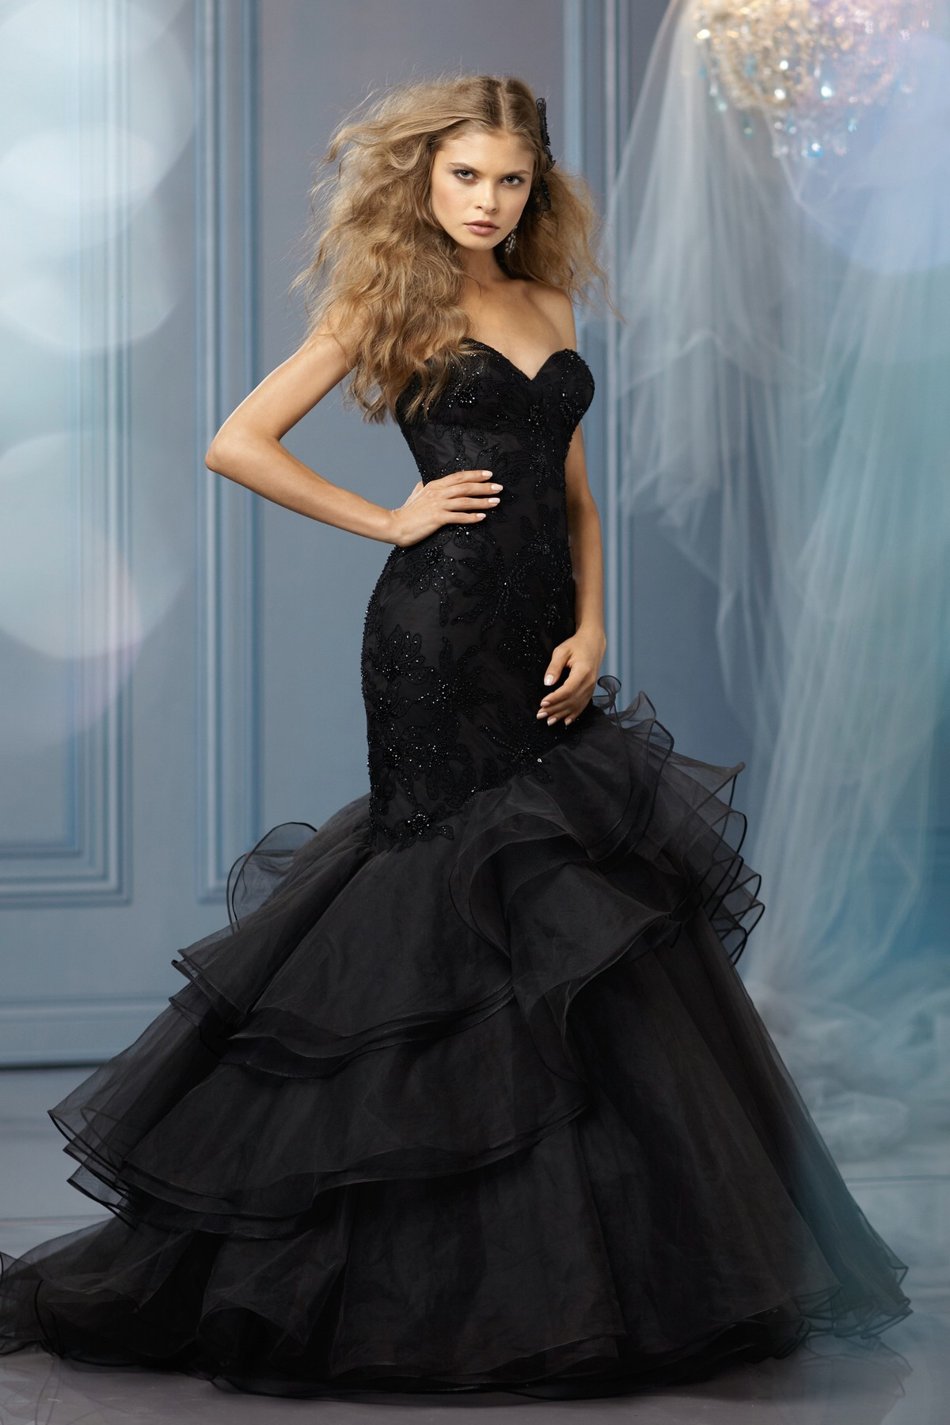 wear black dress to wedding